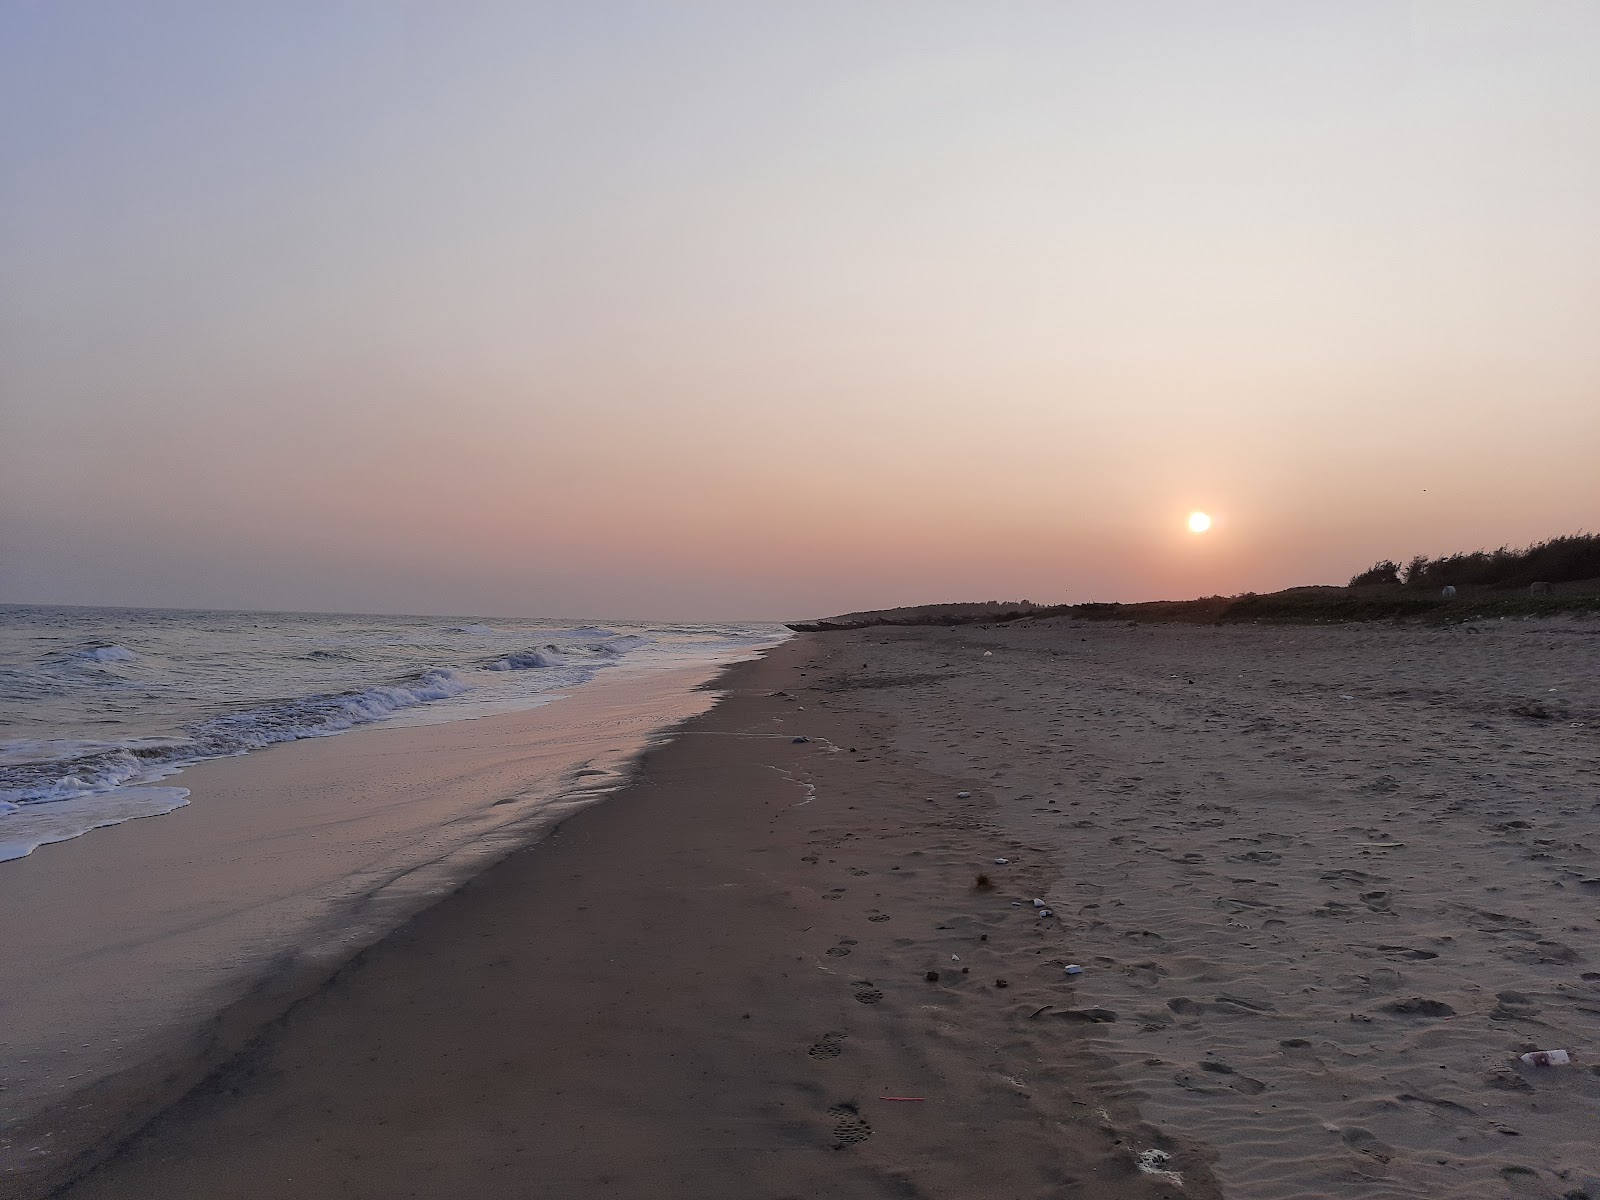 Photo de Dhabaleshwar Beach - endroit populaire parmi les connaisseurs de la détente